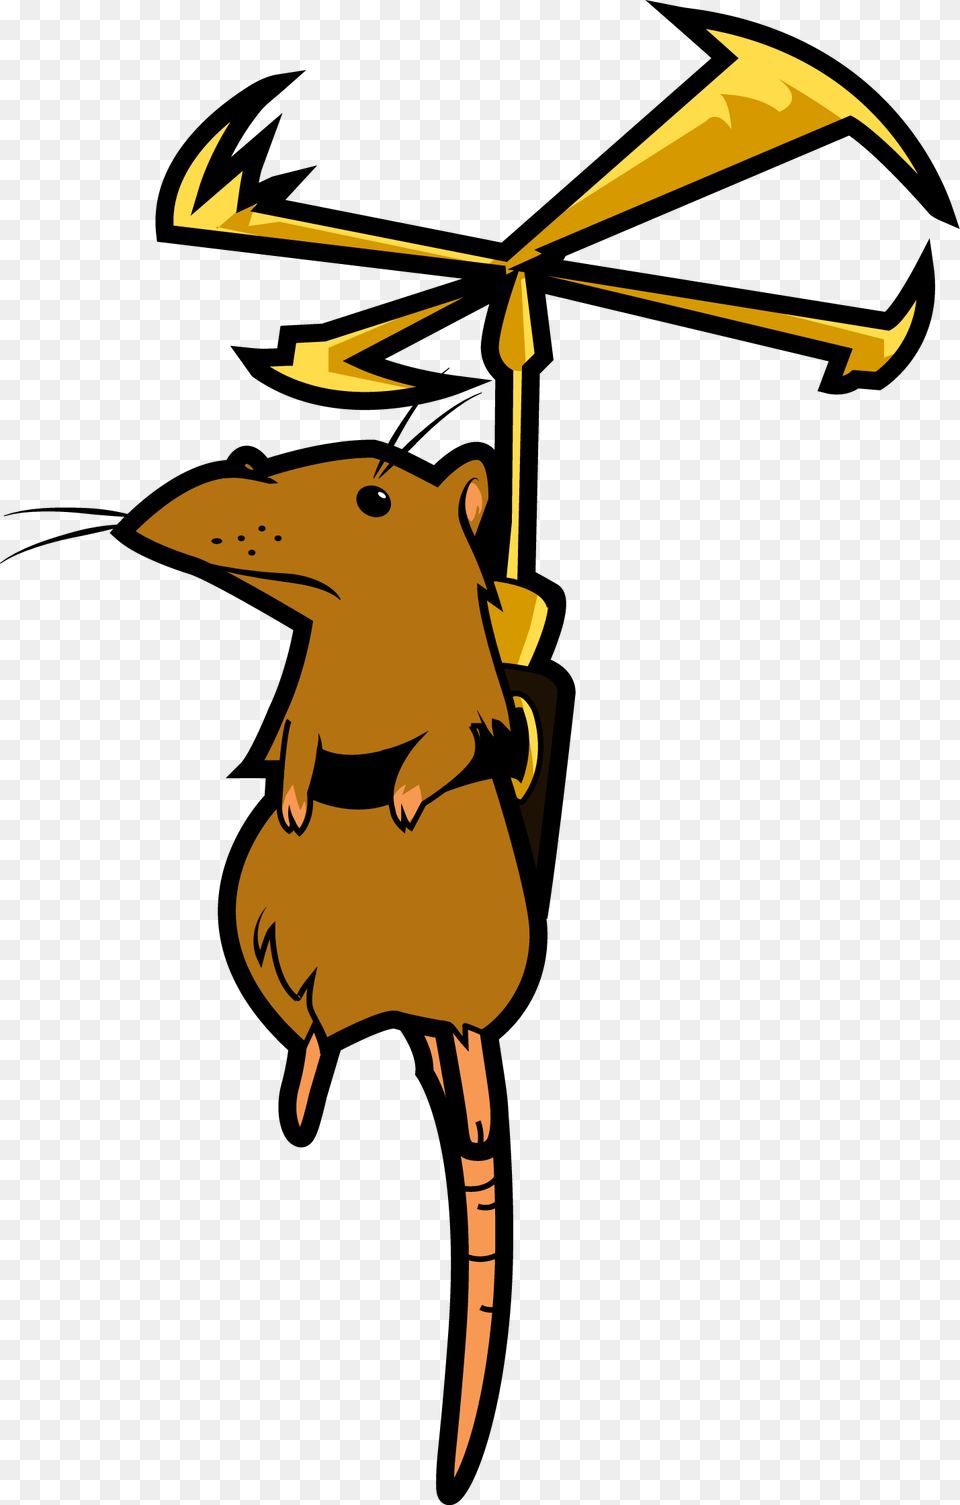 Propeller Rat Shovel Knight, Animal, Mammal Png Image